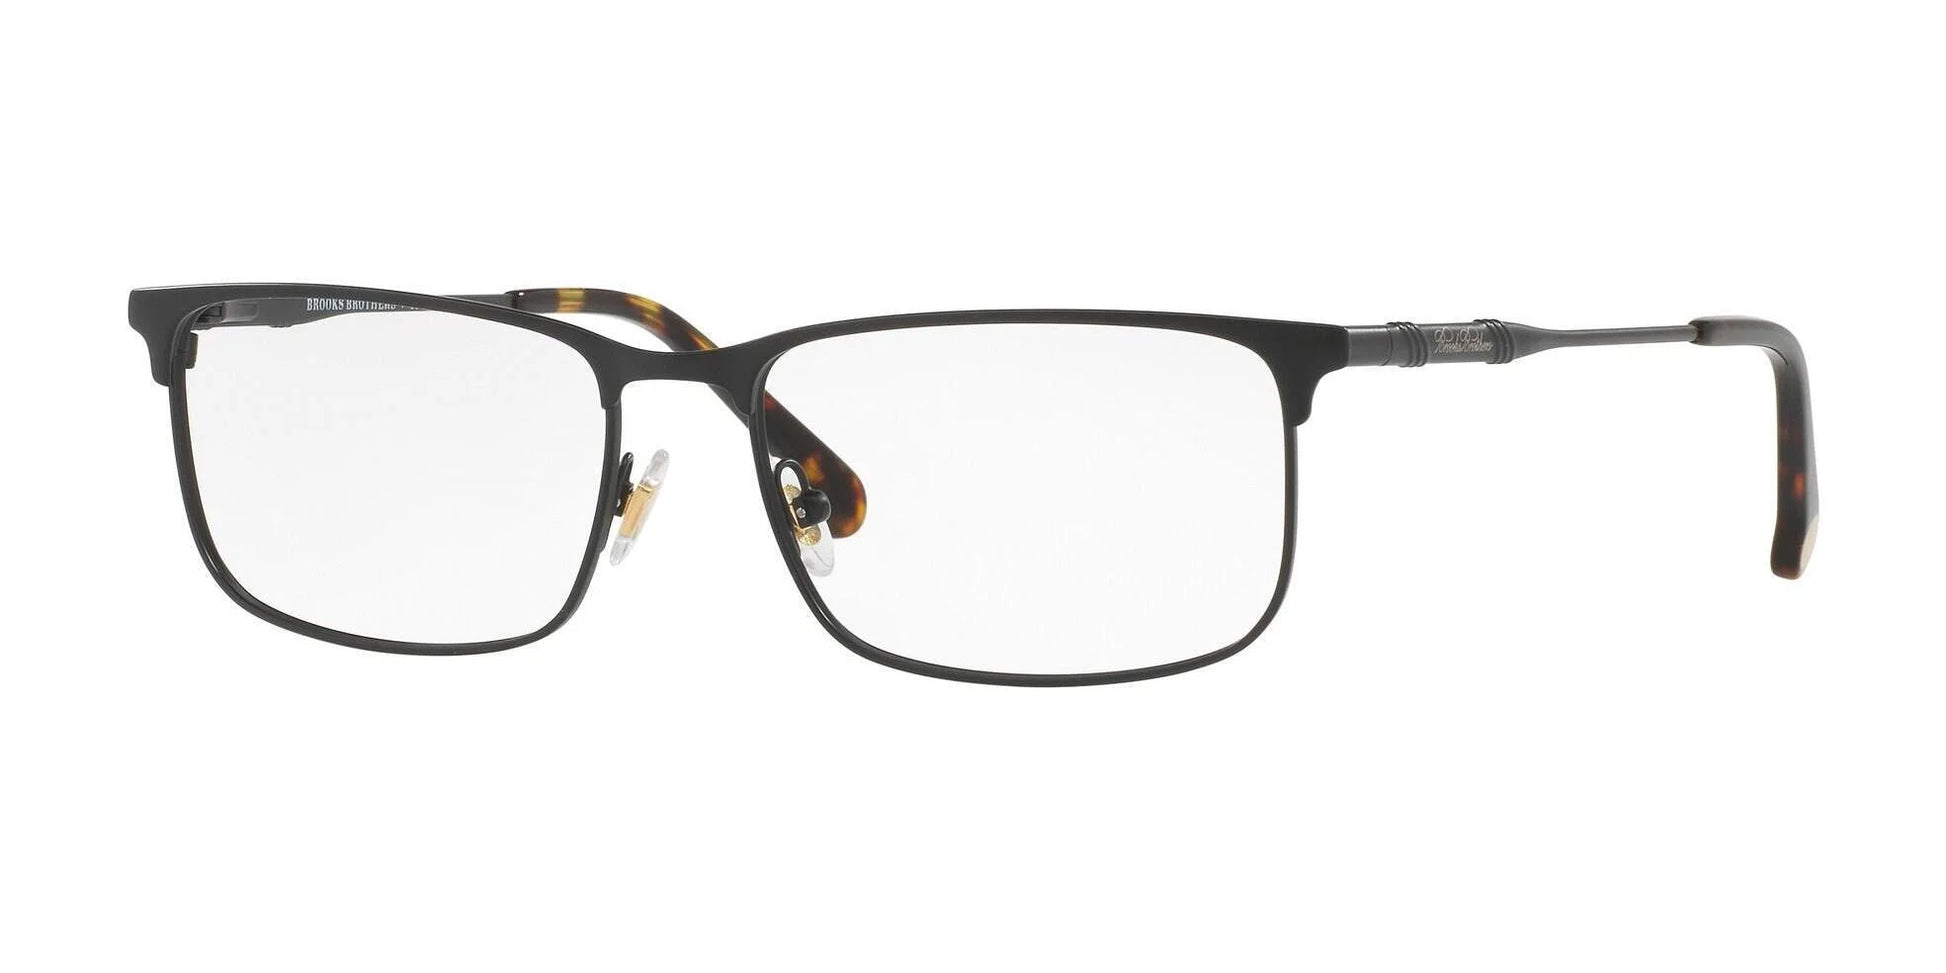 Brooks Brothers BB1046 Eyeglasses Black